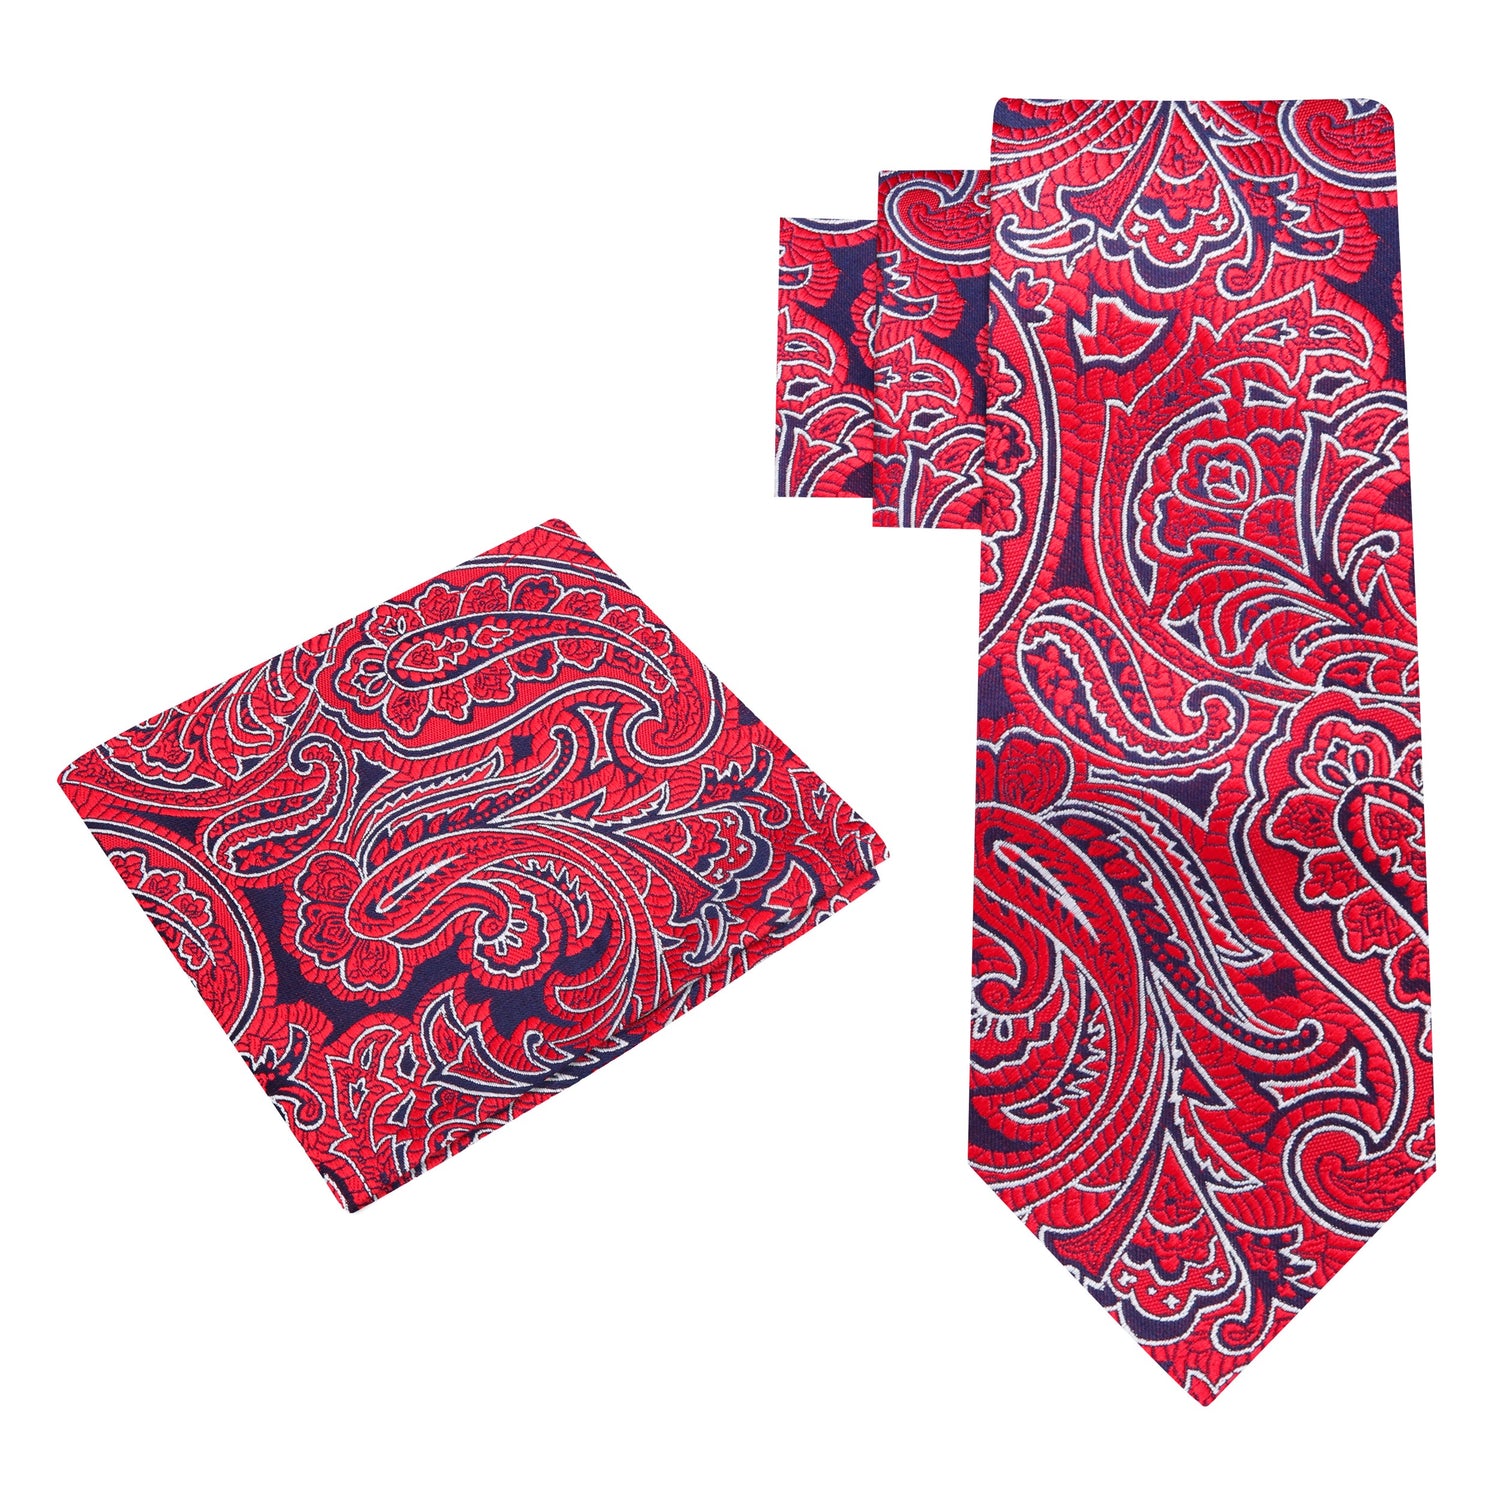 Alt View: A Red, Dark Blue Paisley Pattern Silk Necktie, Matching Pocket Square